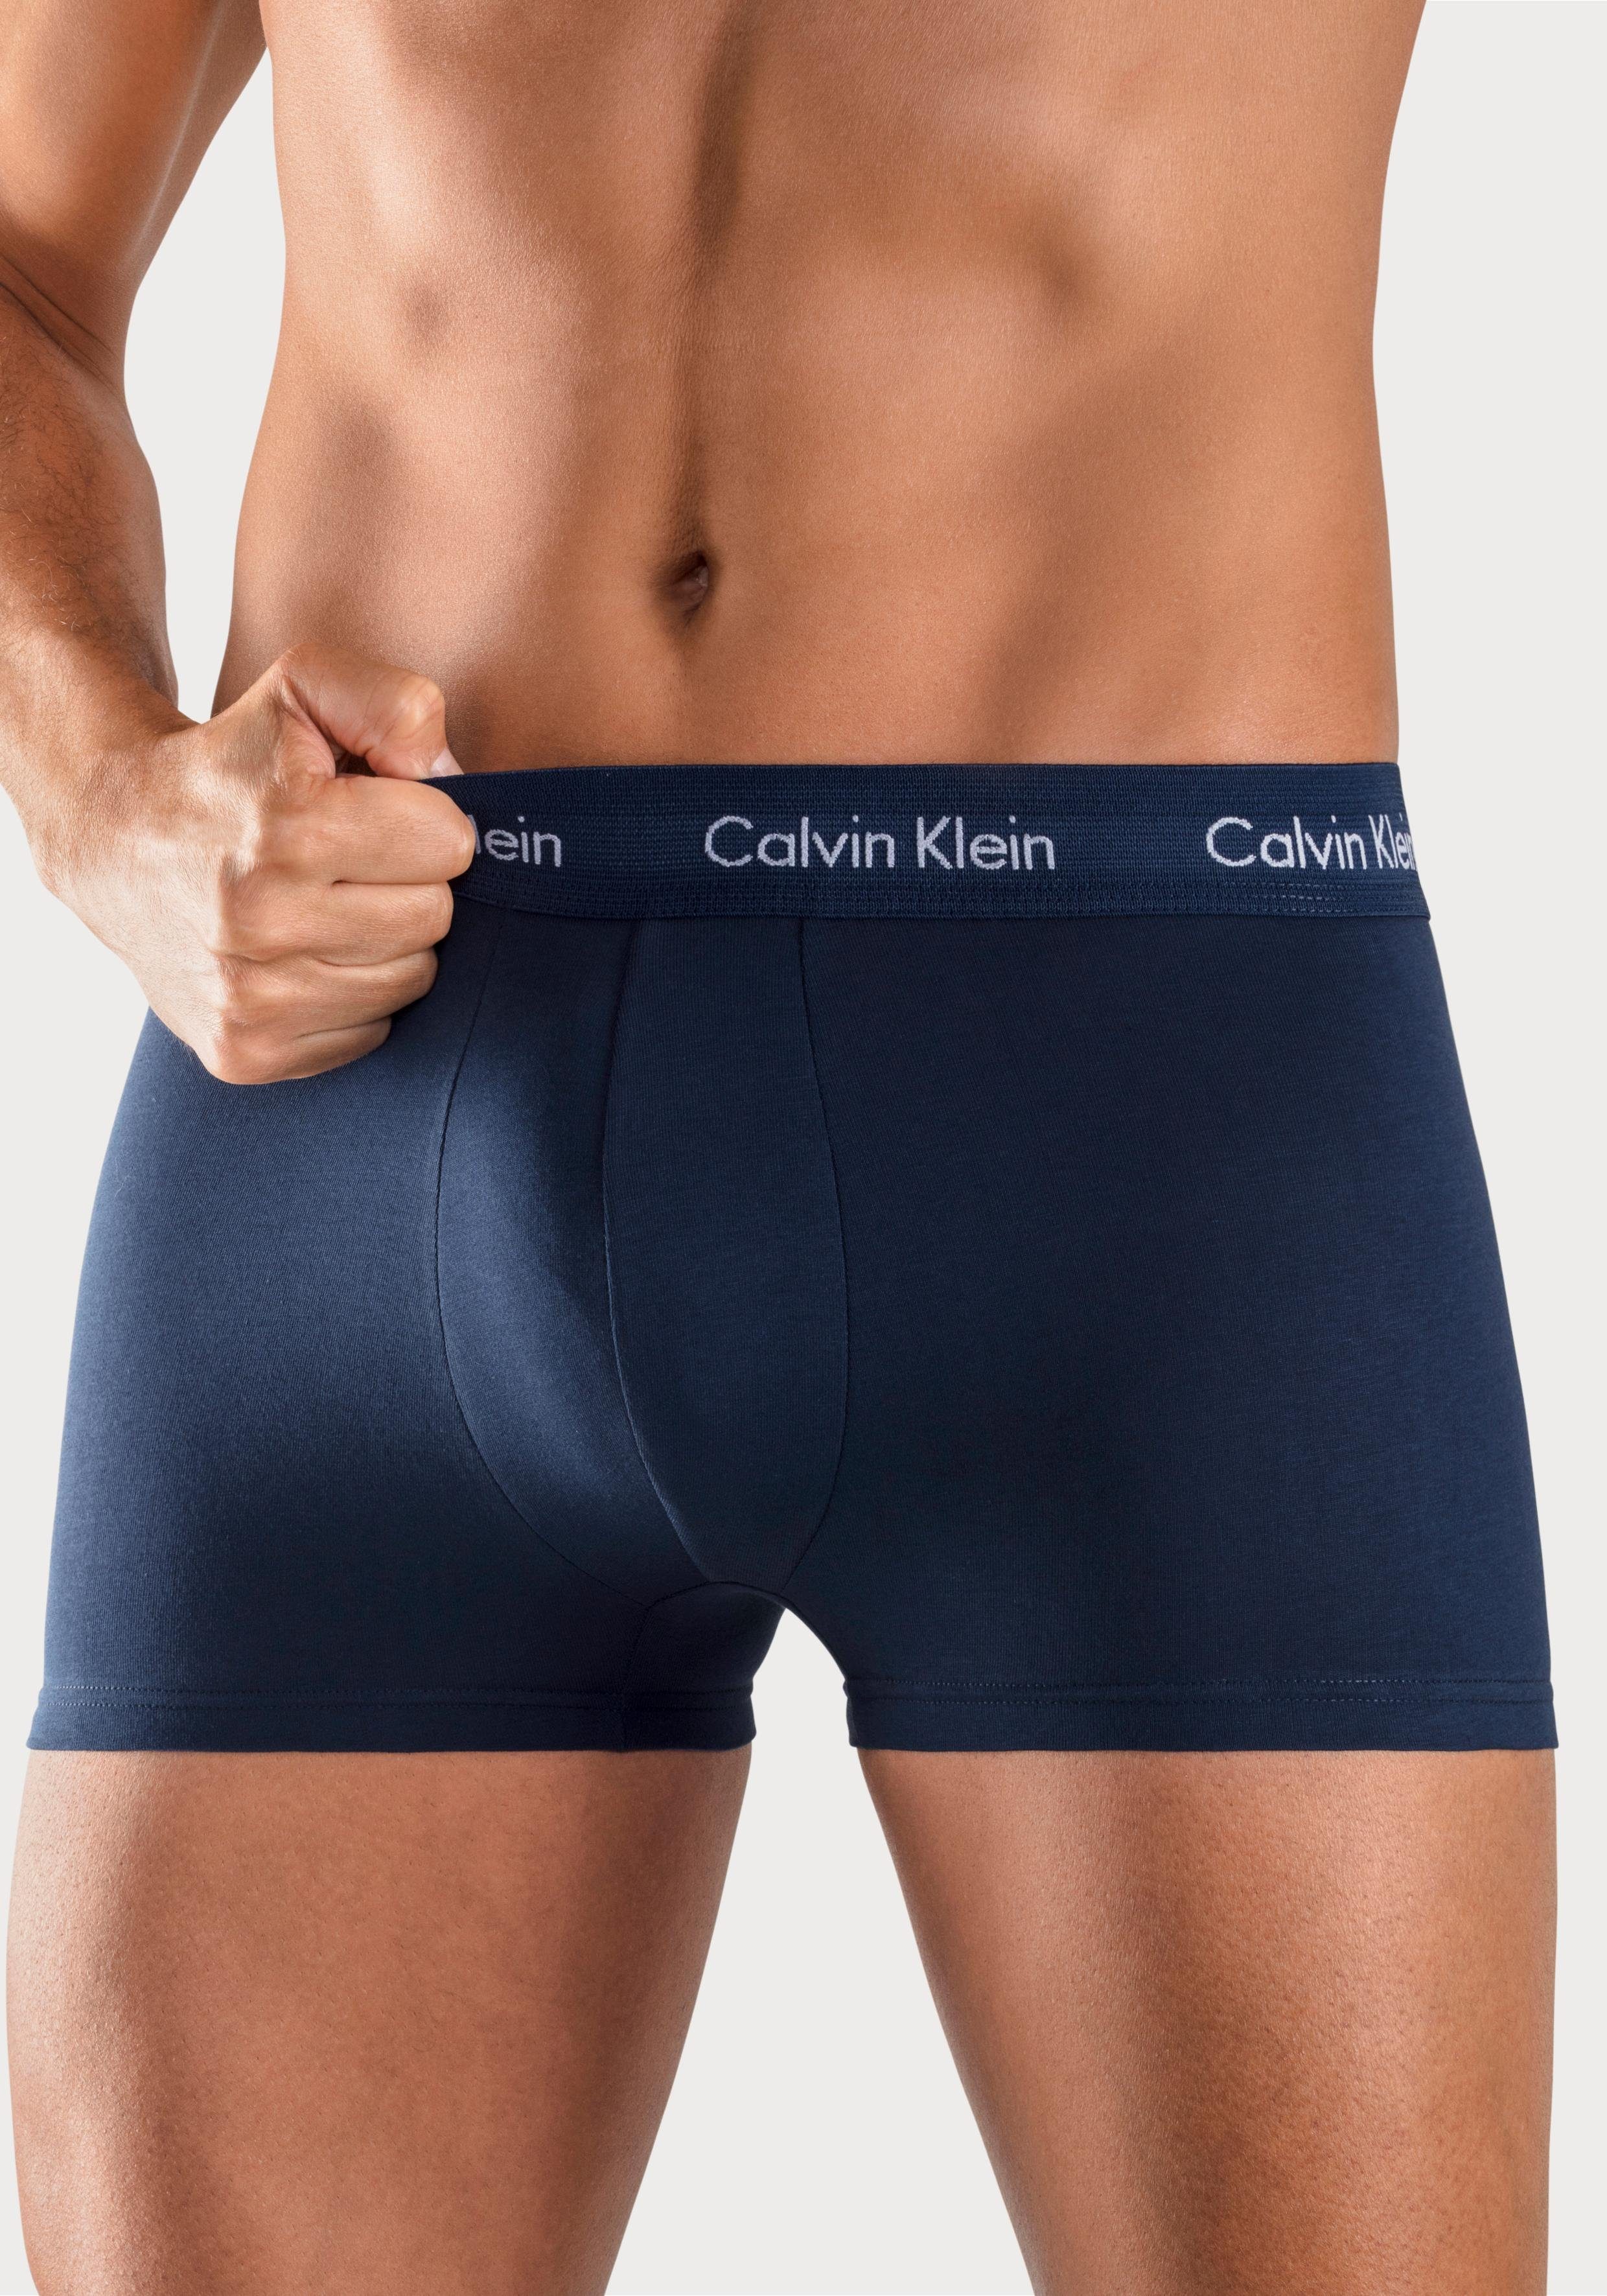 liefdadigheid Luchten Appartement Calvin Klein Boxershort in blauwtinten (3 stuks) online verkrijgbaar |  LASCANA